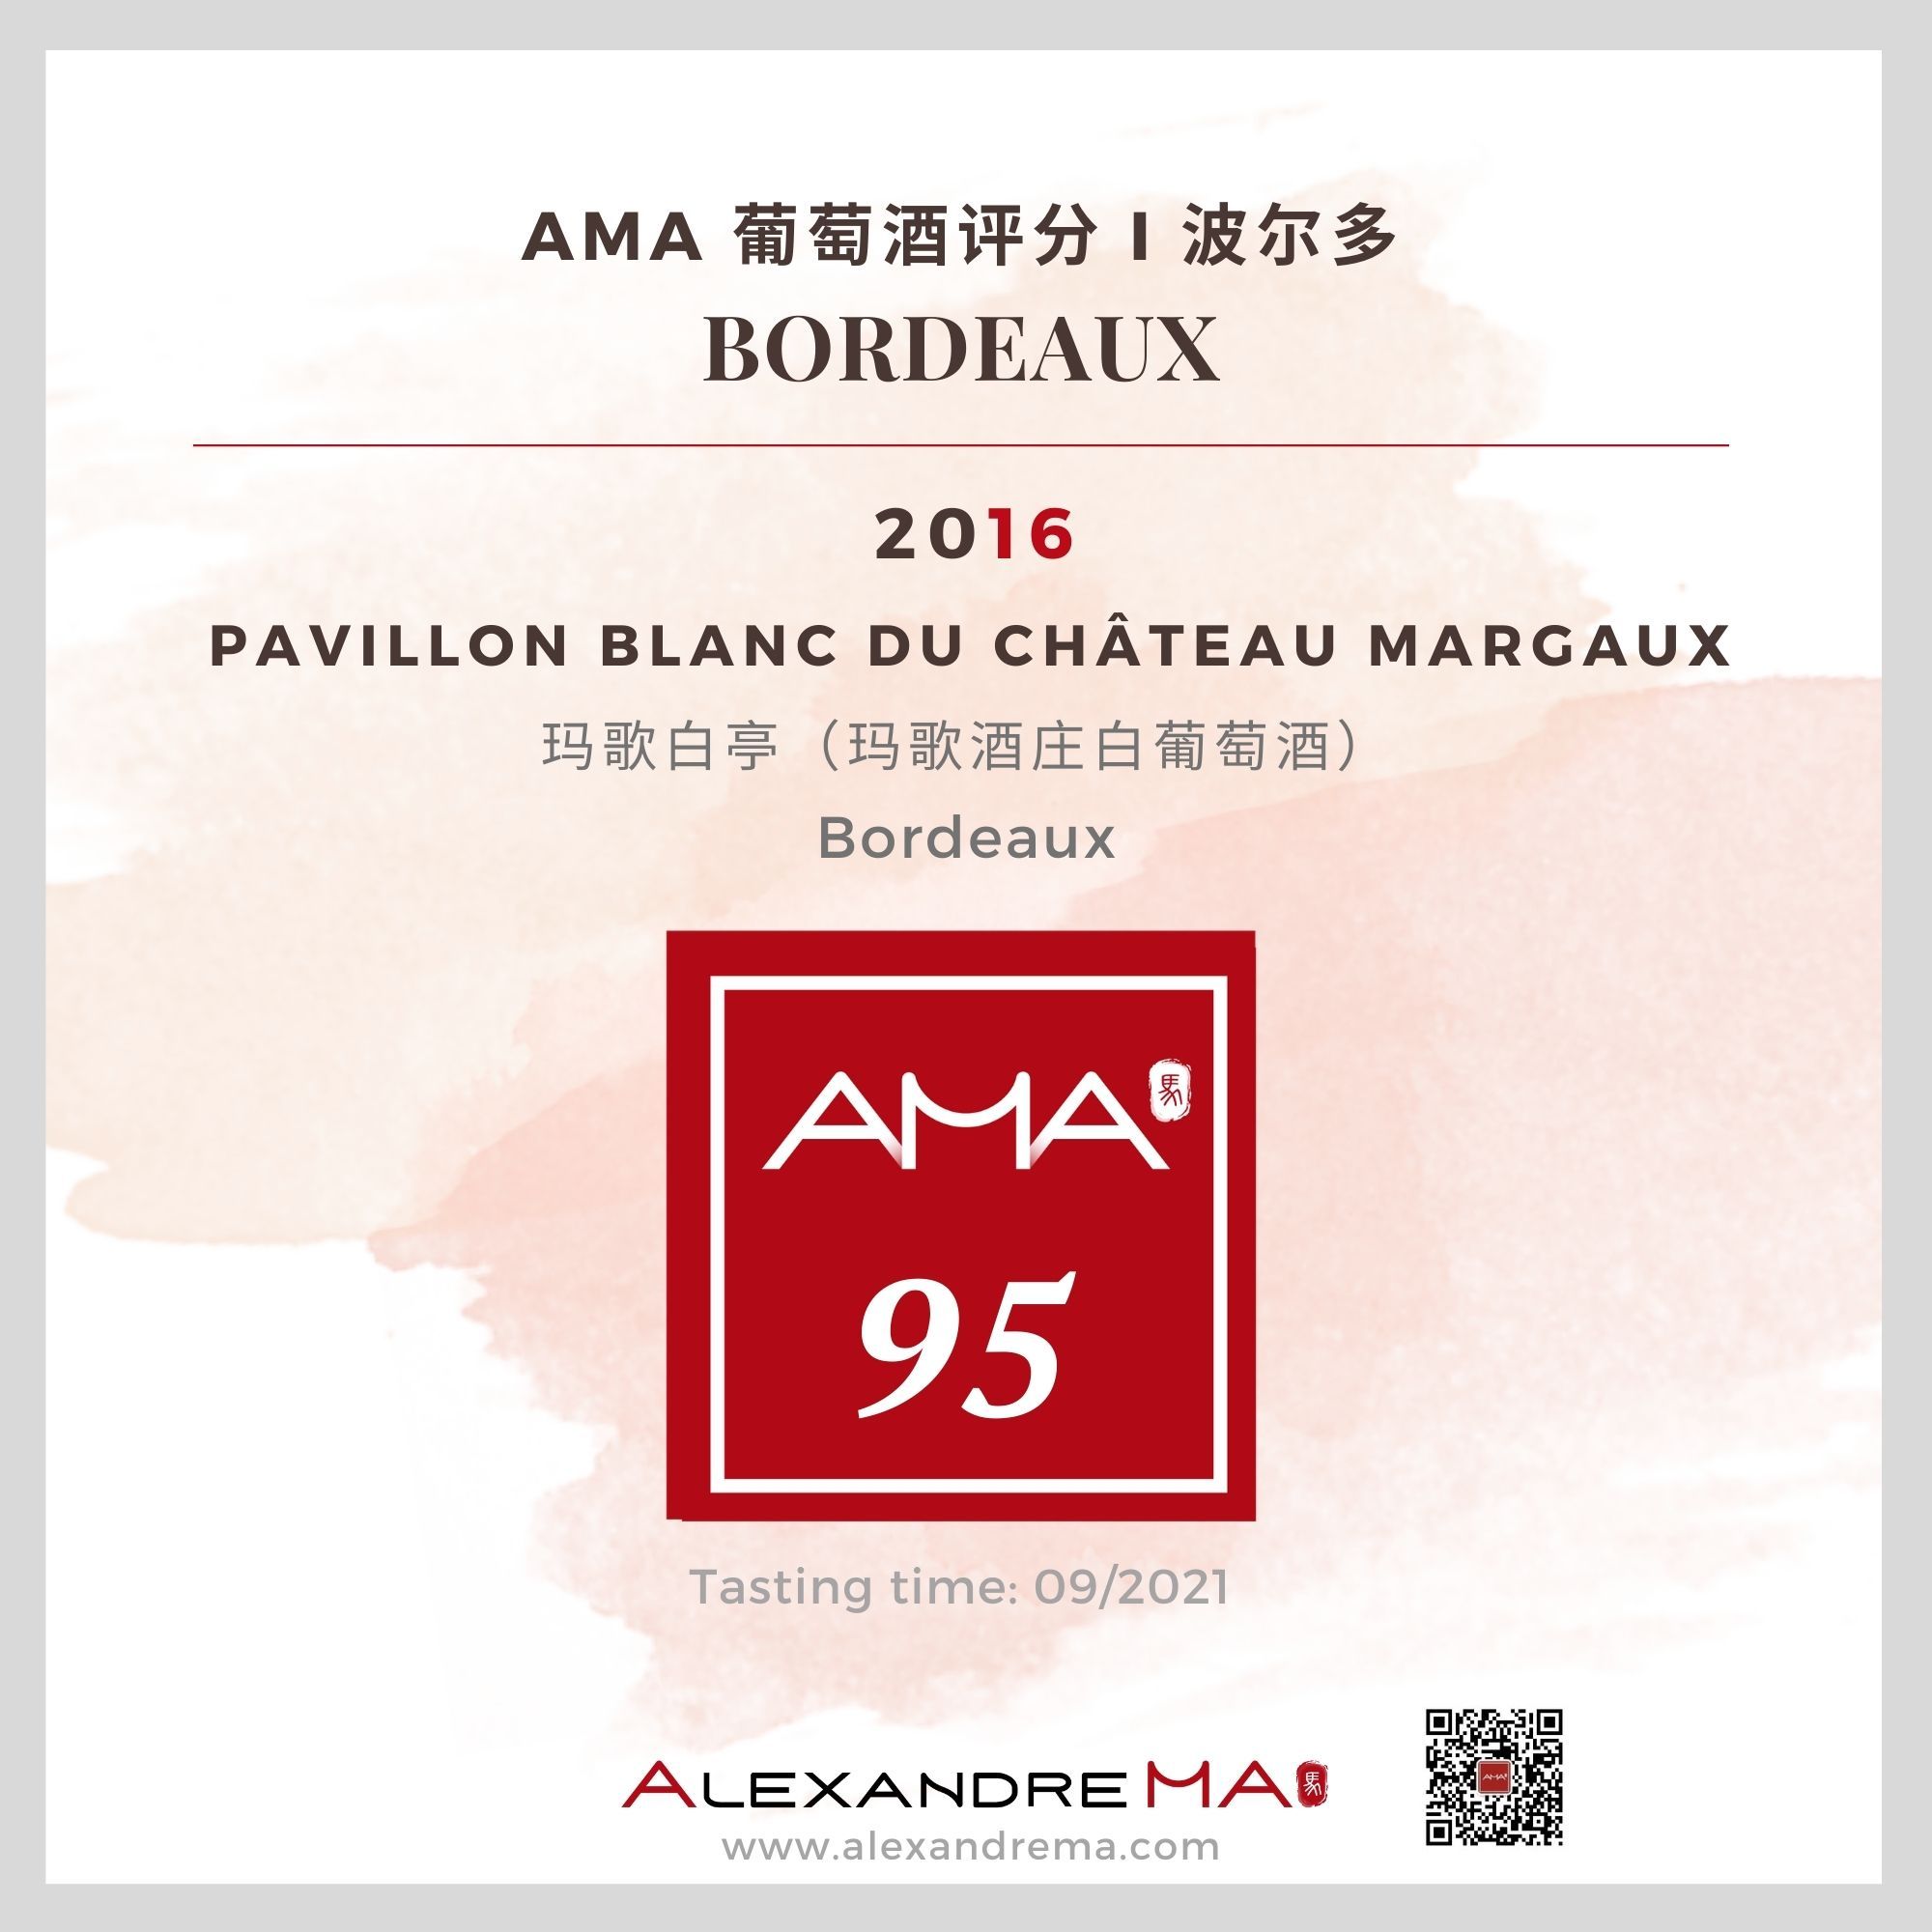 Château Margaux Pavillon Blanc du Château Margaux 2016 玛歌白亭 - Alexandre Ma